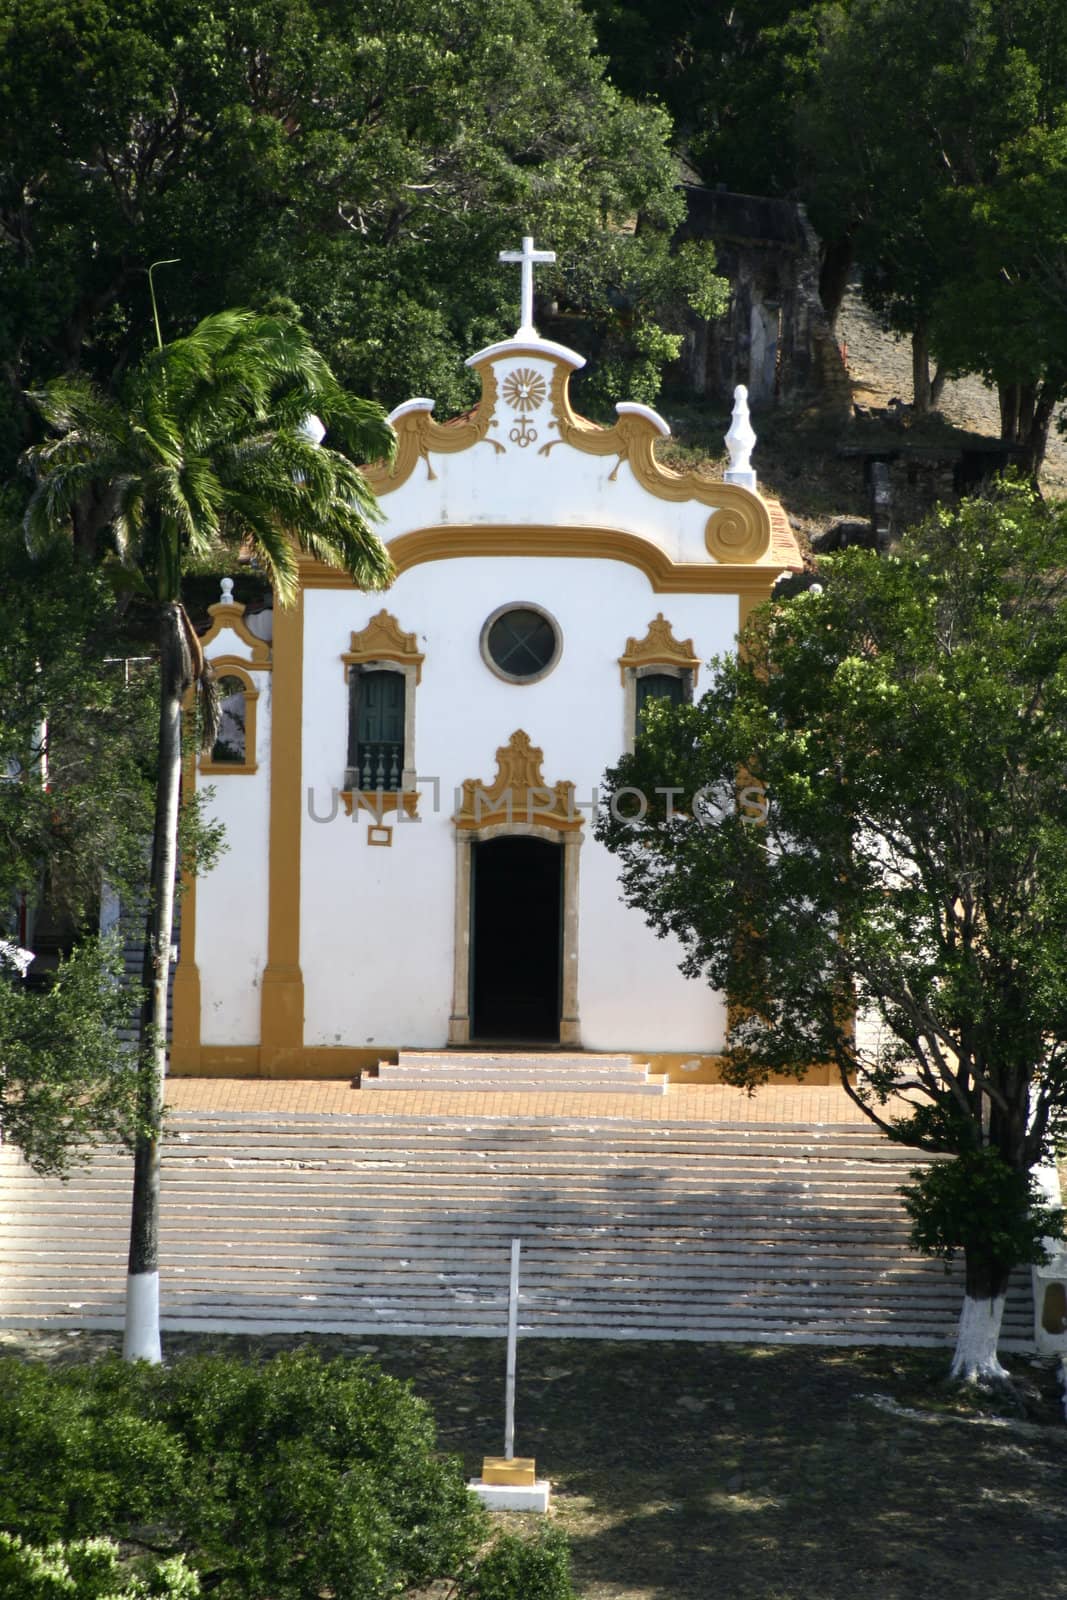 A small church or chapel in Fernando de Noronha - Brazil.